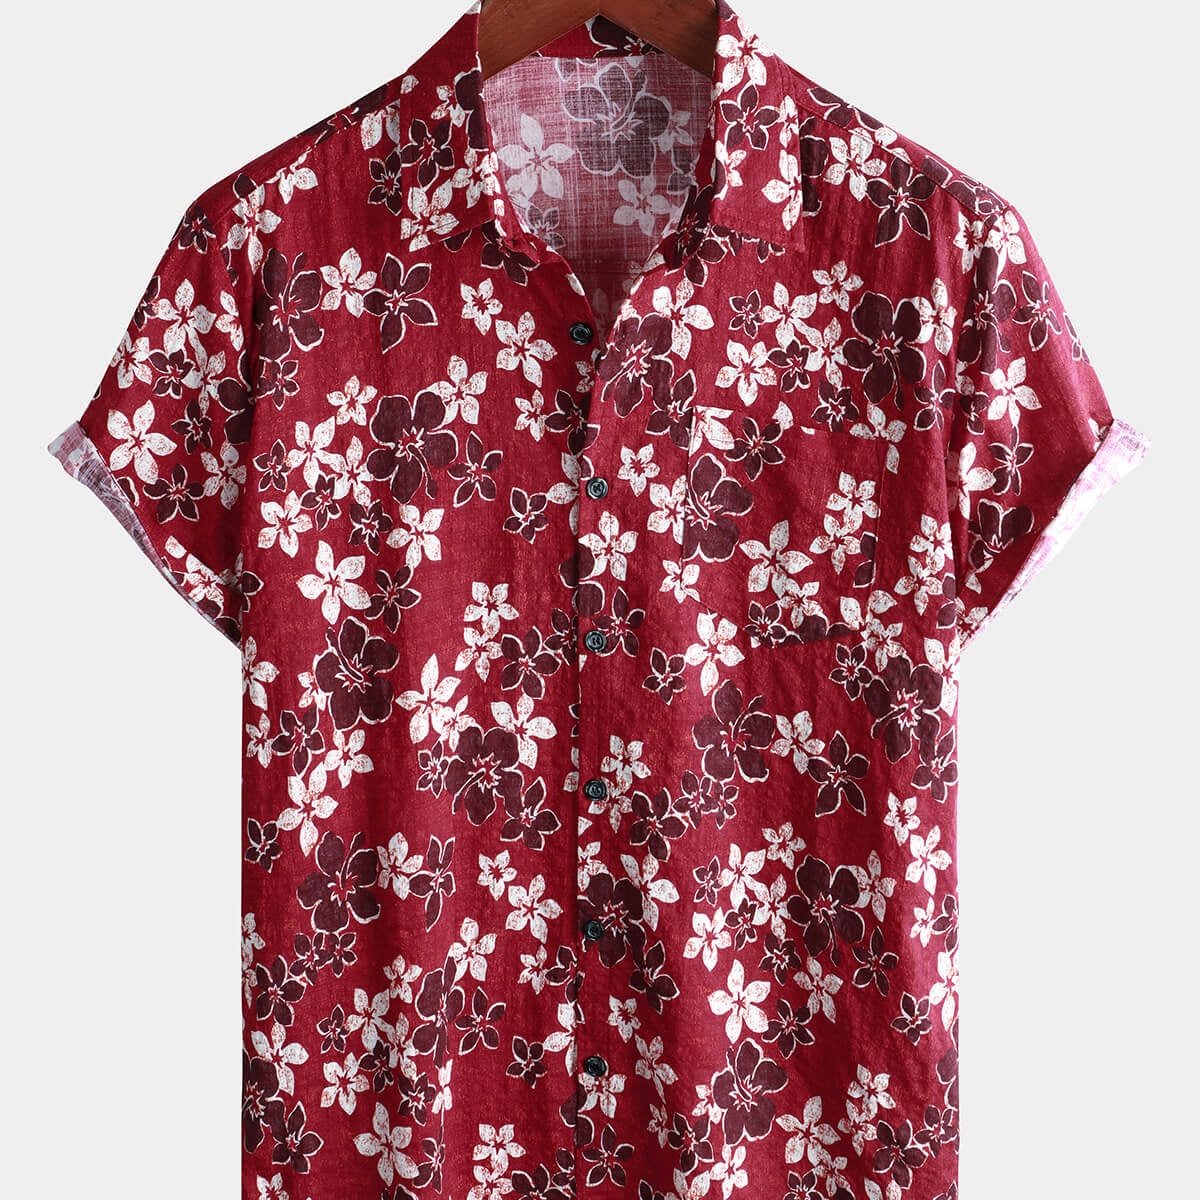 Men's Floral Hawaiian Print Button Summer Beach Short Sleeve Shirt